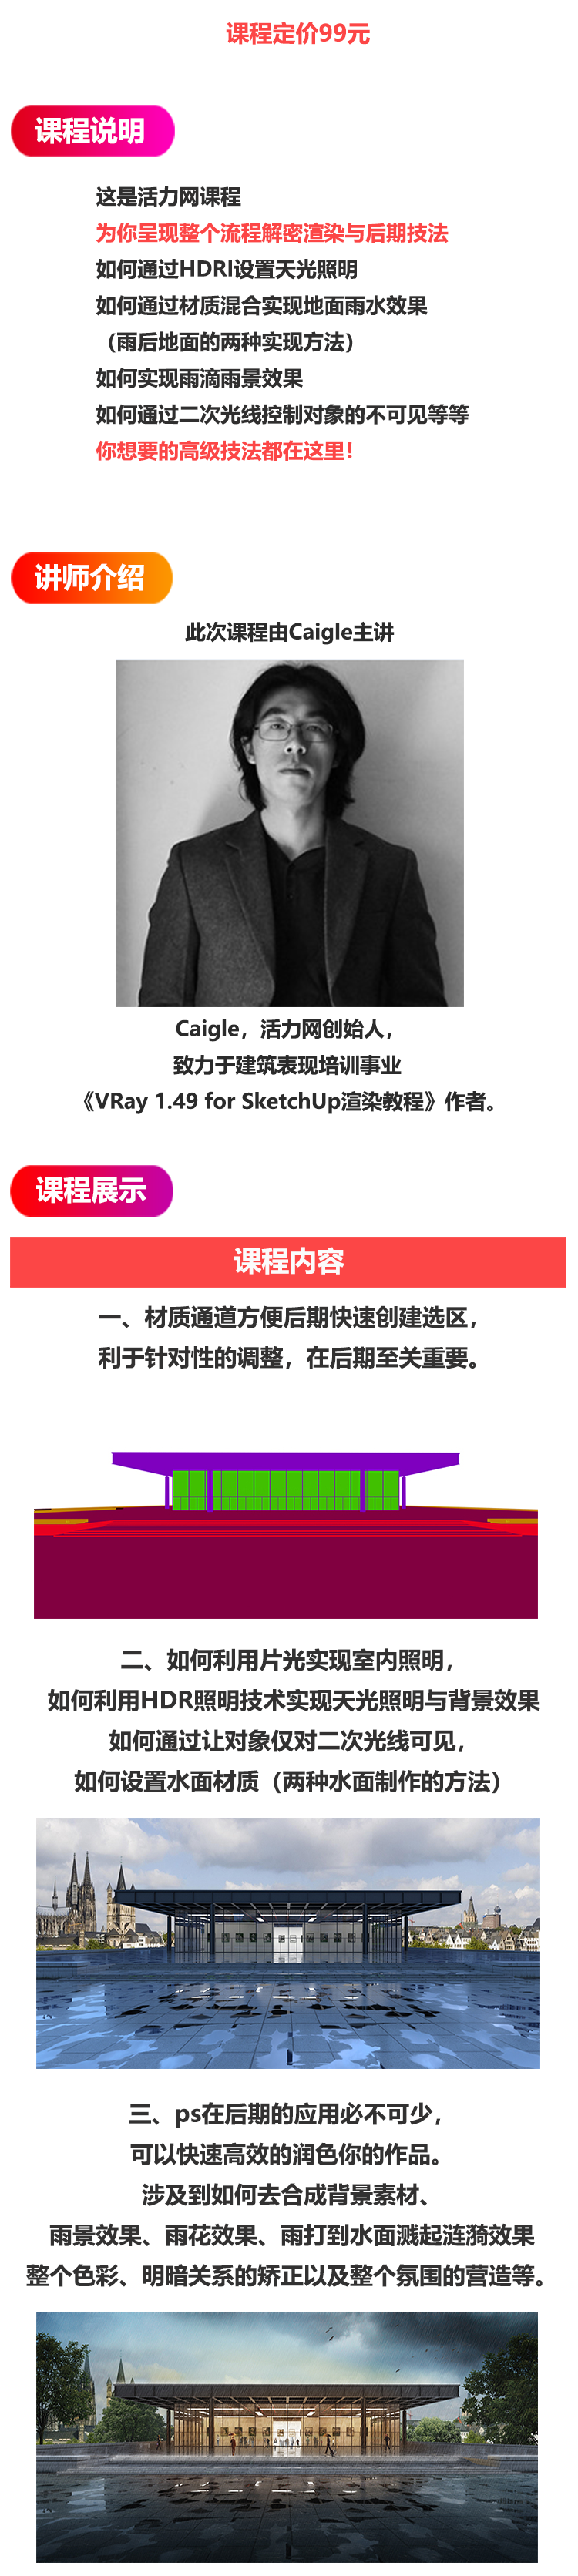 VRay2.0 for SketchUp美术馆雨景表现教程